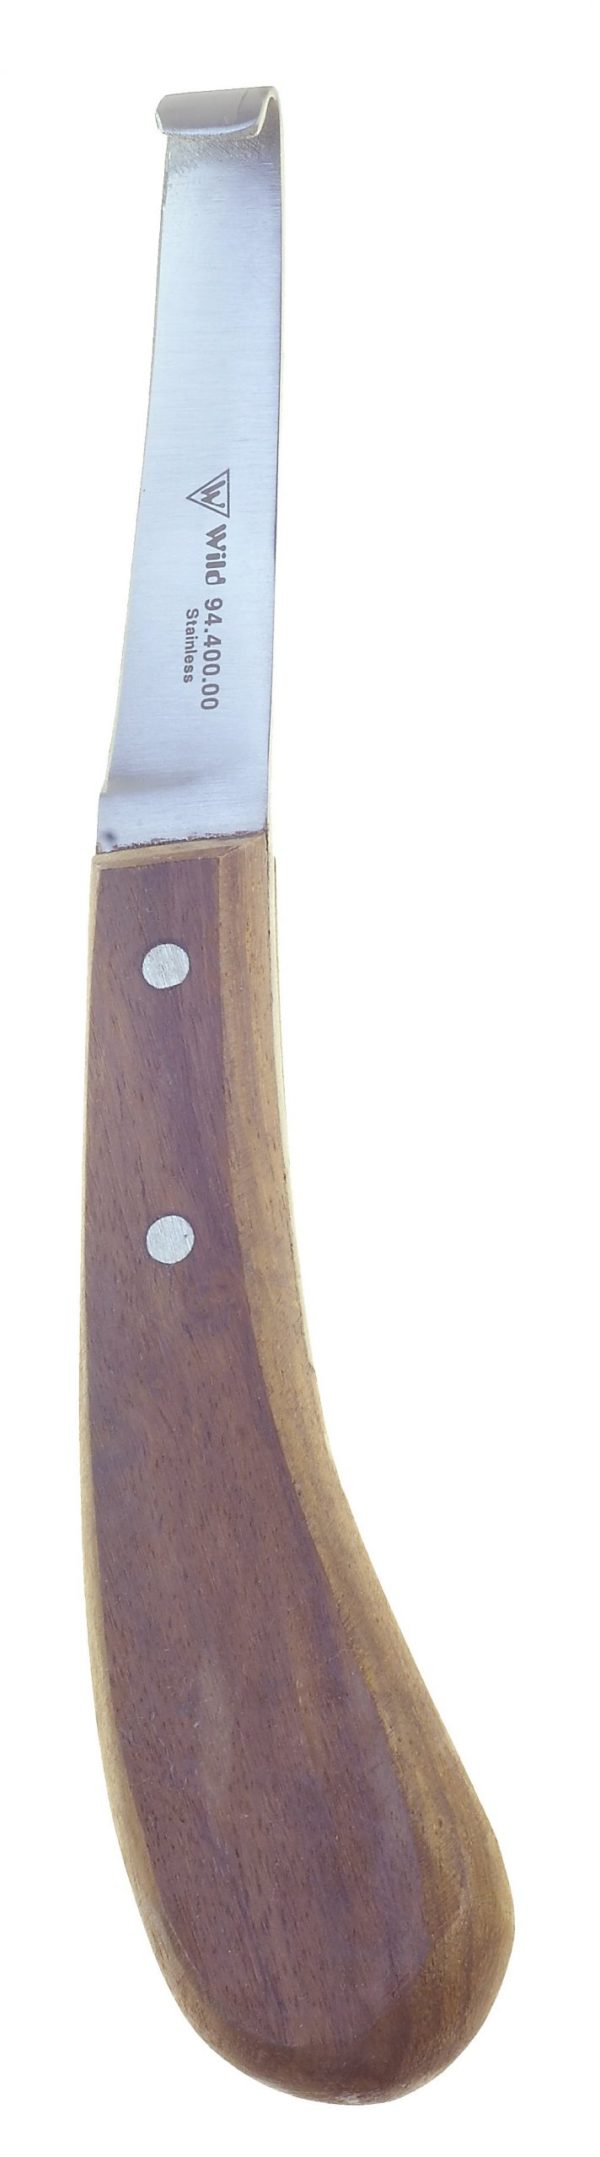 Hufmesser mit Holzgriff 94.400.00zum Preis von 17.69 zzgl. Versand Hersteller : Heiko Wild